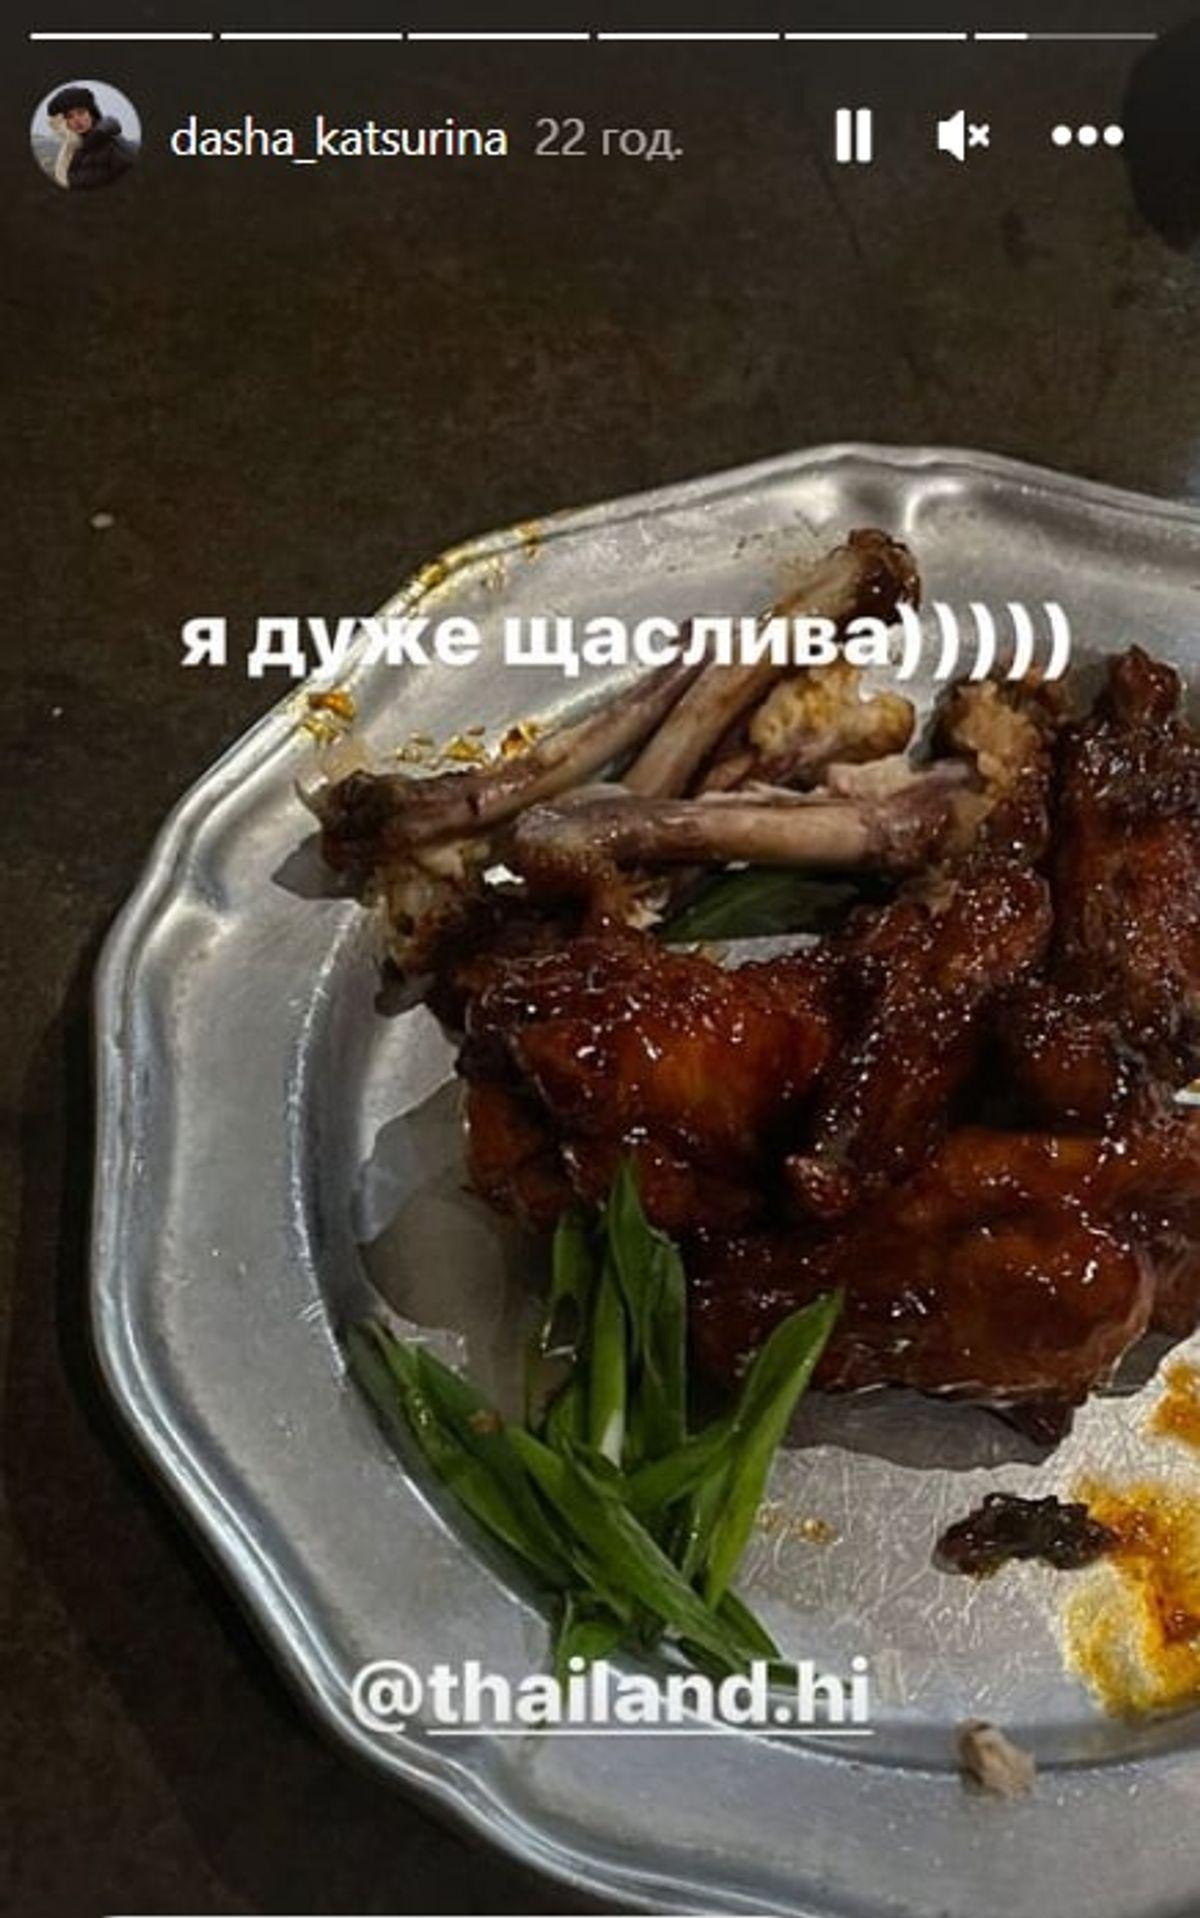 Кацуріна приїхала на вихідні в Україну / скріншот